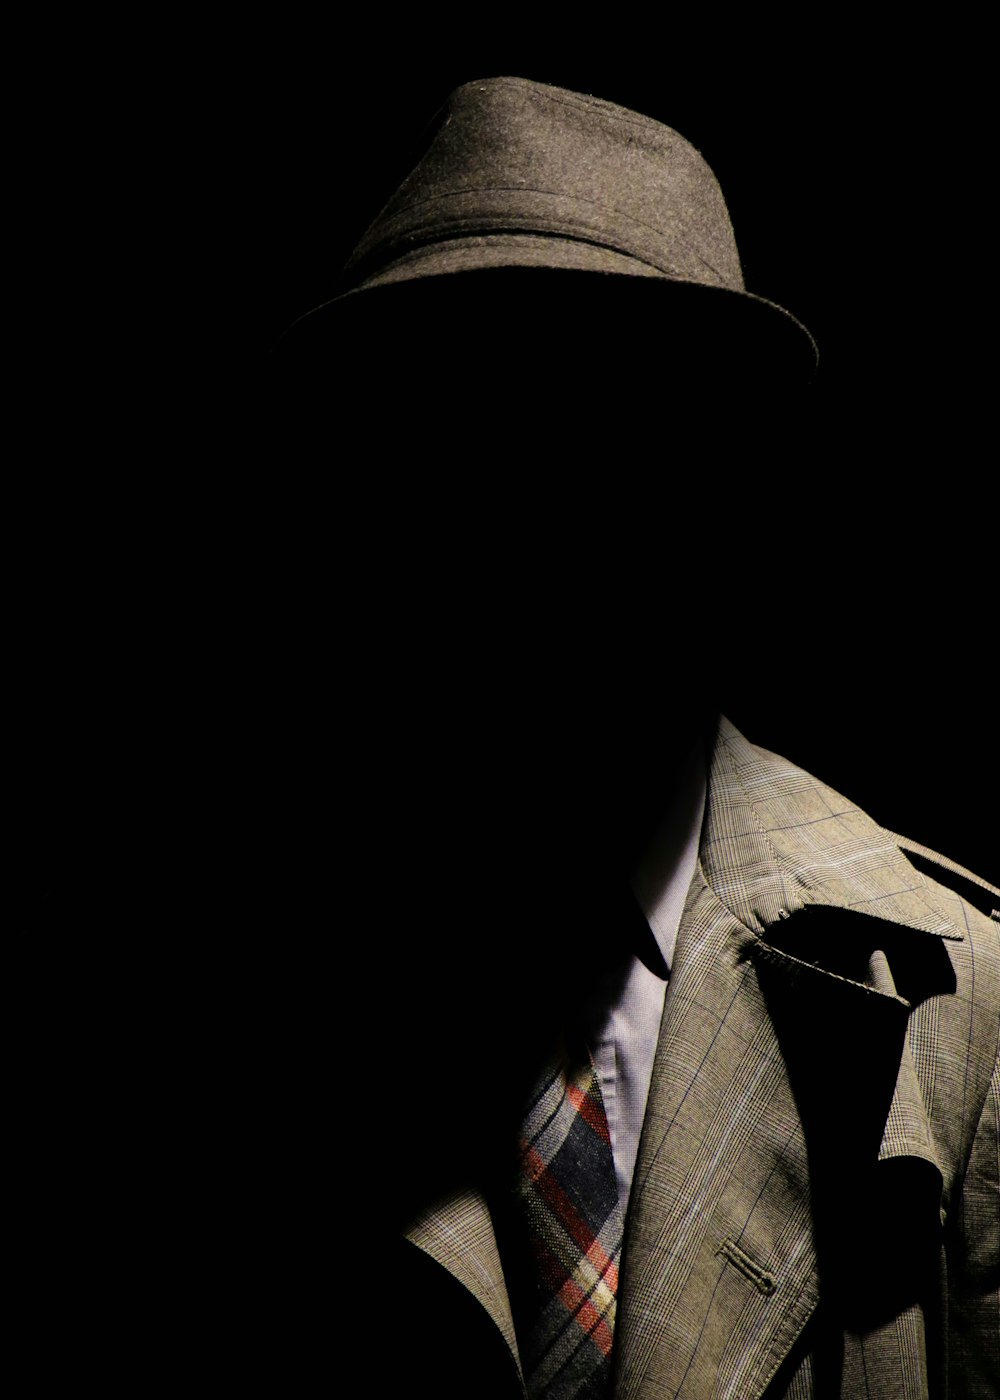 회색 격자 무늬 노치 옷깃 양복 재킷과 회색 모자를 쓴 사람 얼굴 숨기기